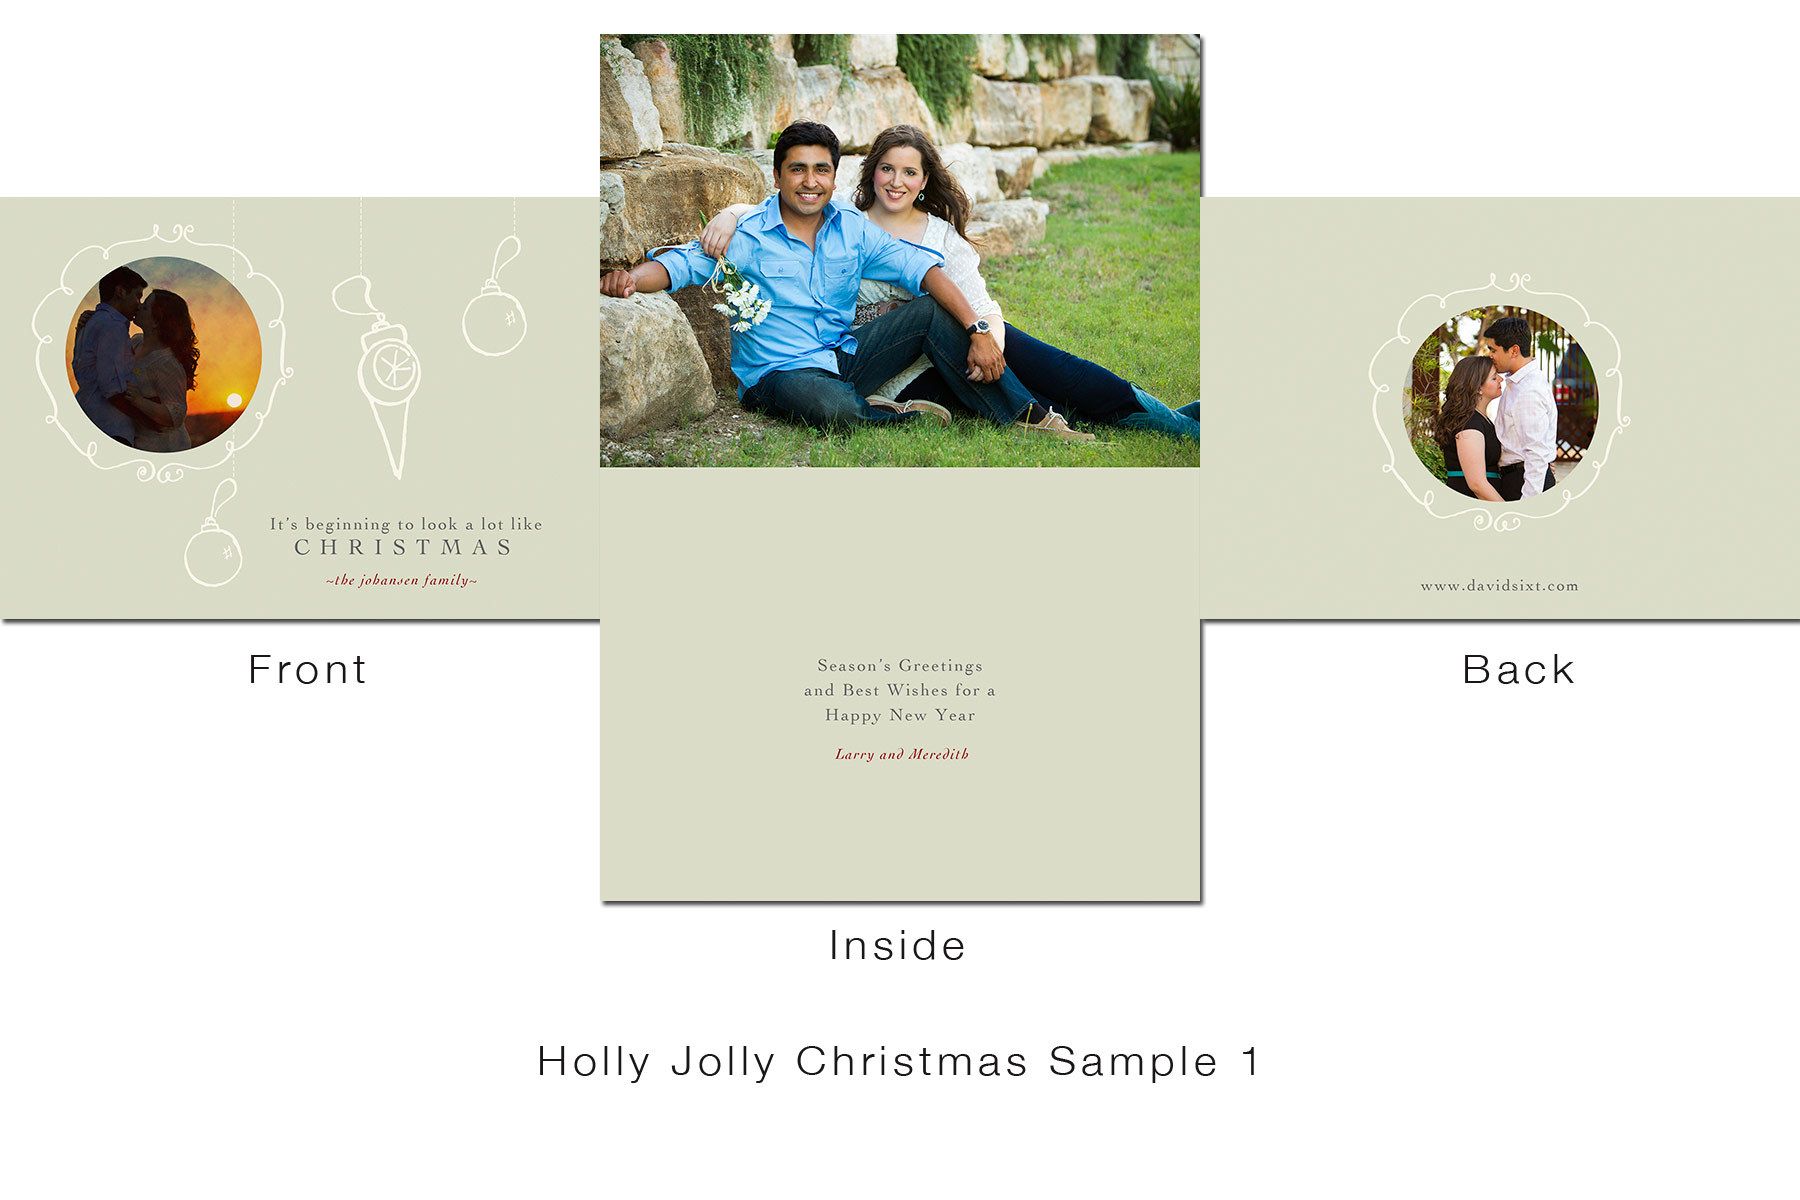 1holly_jolly_christmas_sample_1.jpg